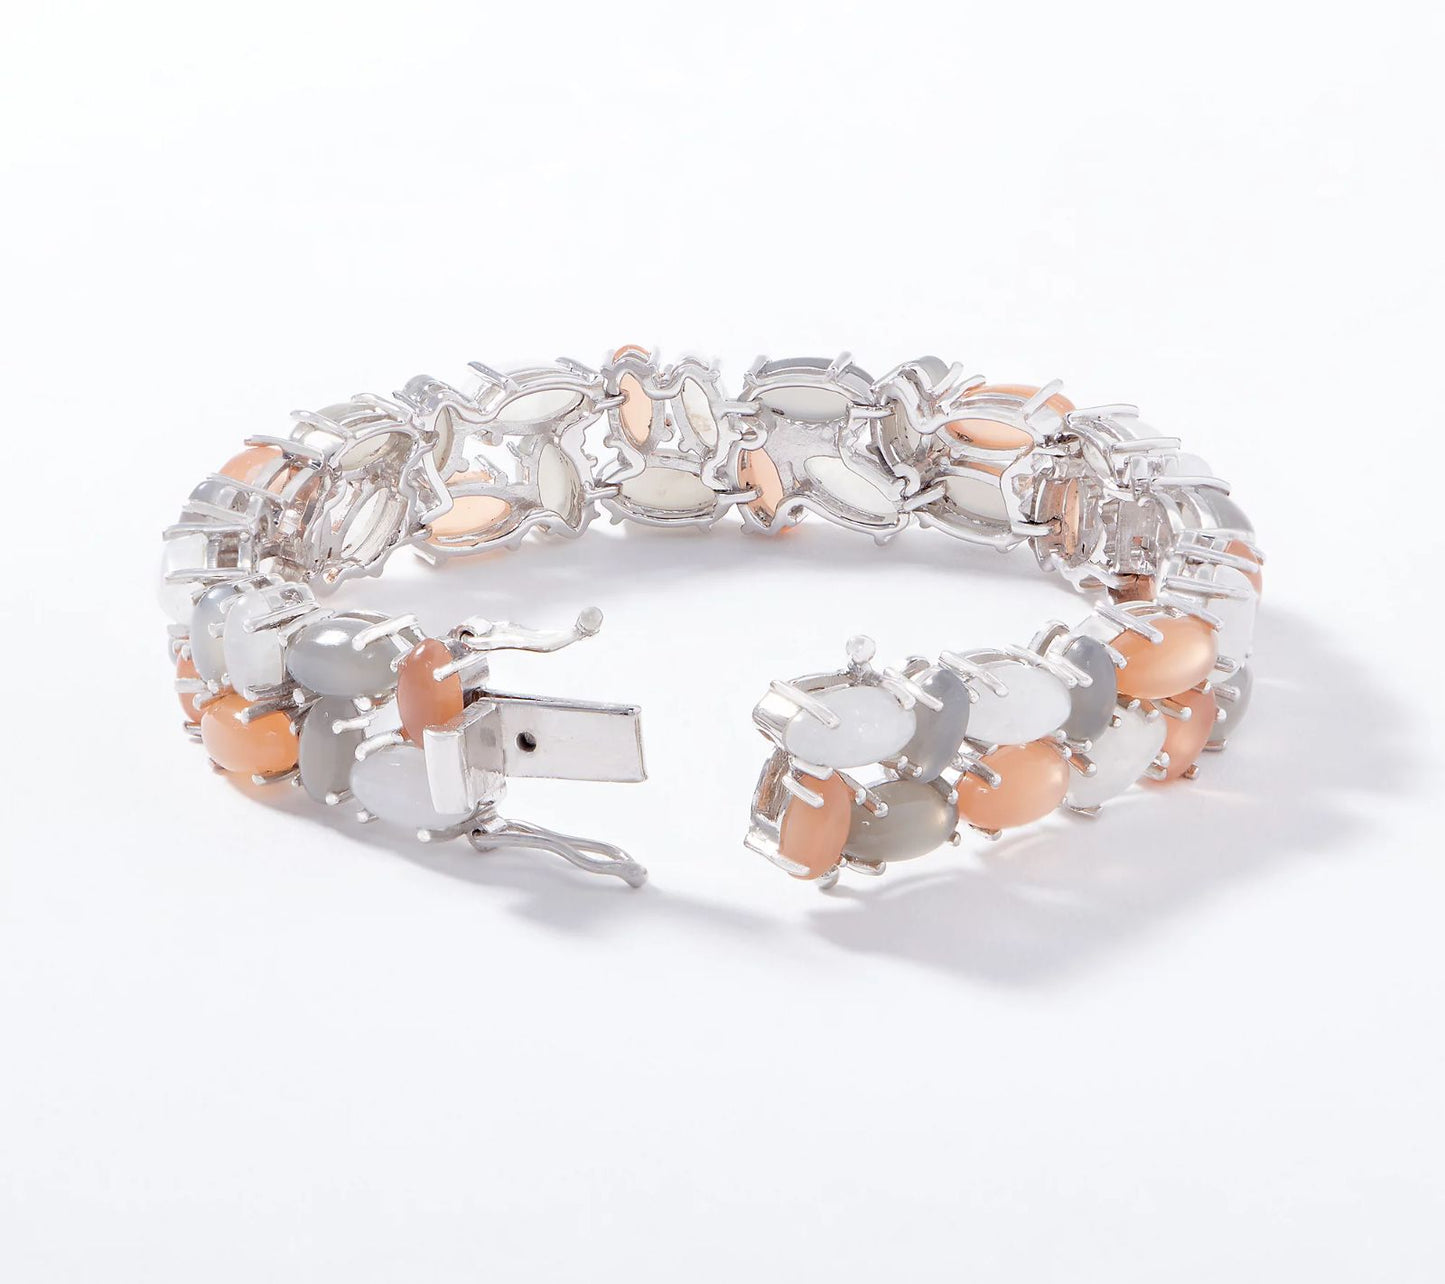 Affinity Gems Multi-Color Moonstone Bracelet, Sterling Silver, Size 7-1/4"